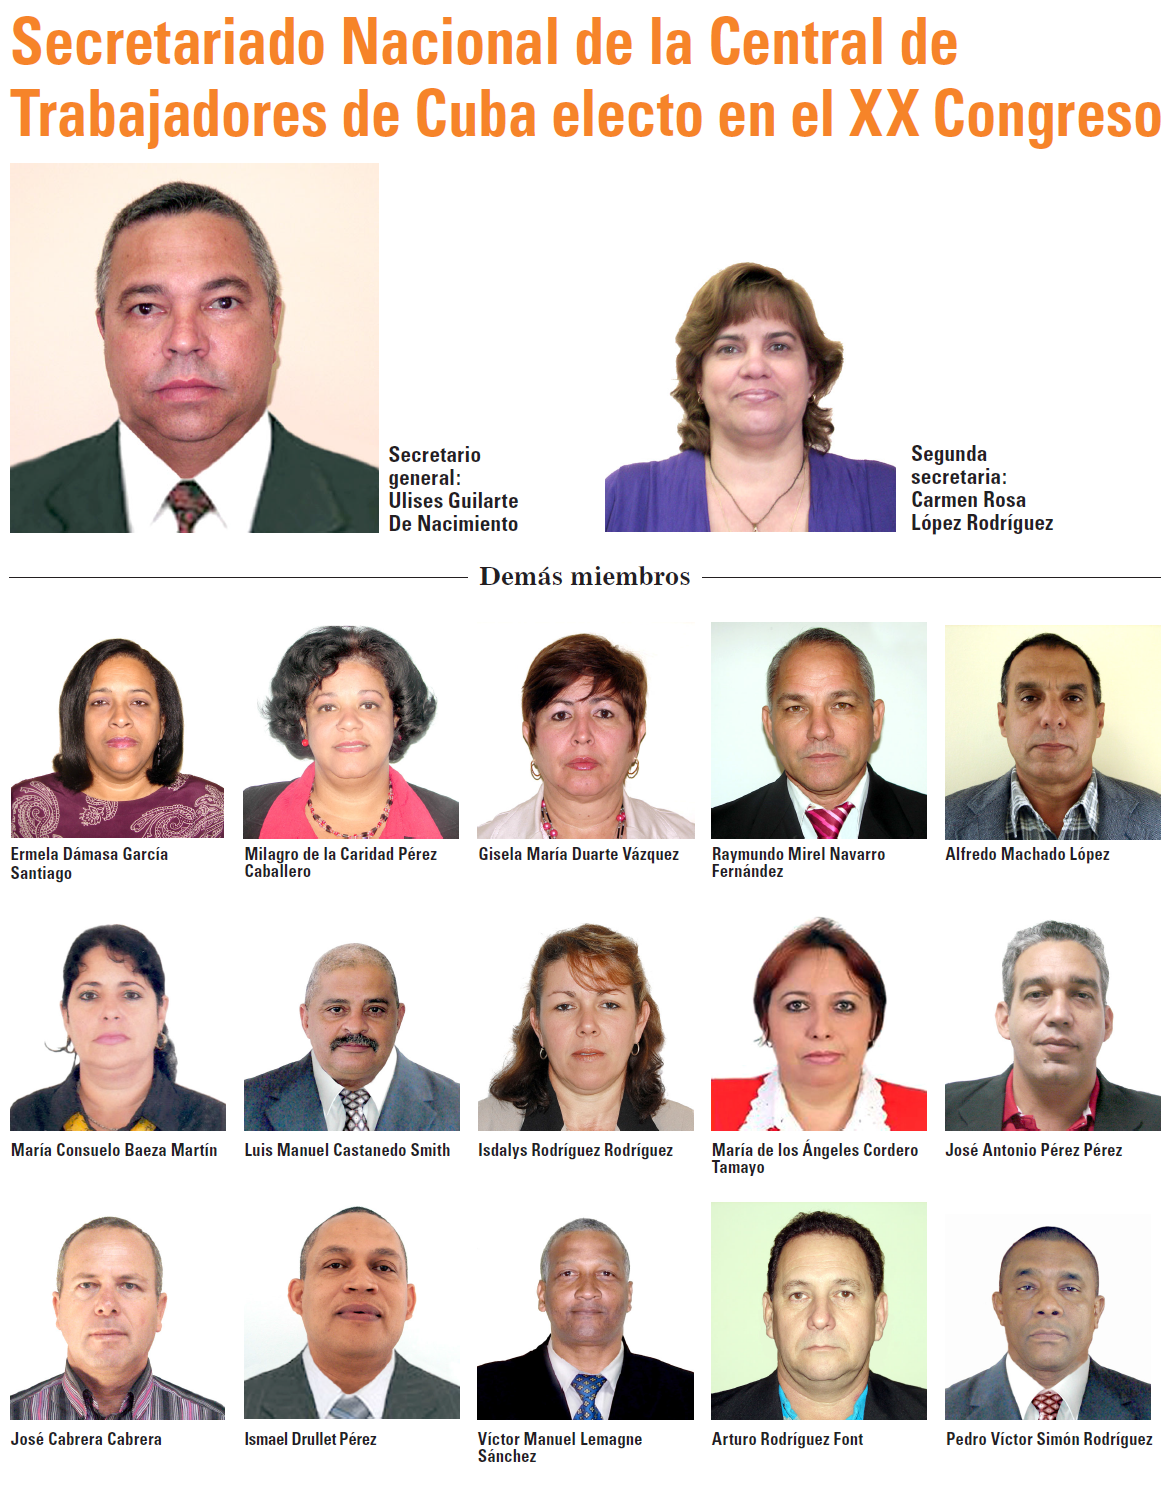 Secretariado Nacional de la Central de Trabajadores de Cuba - CTC - 2014